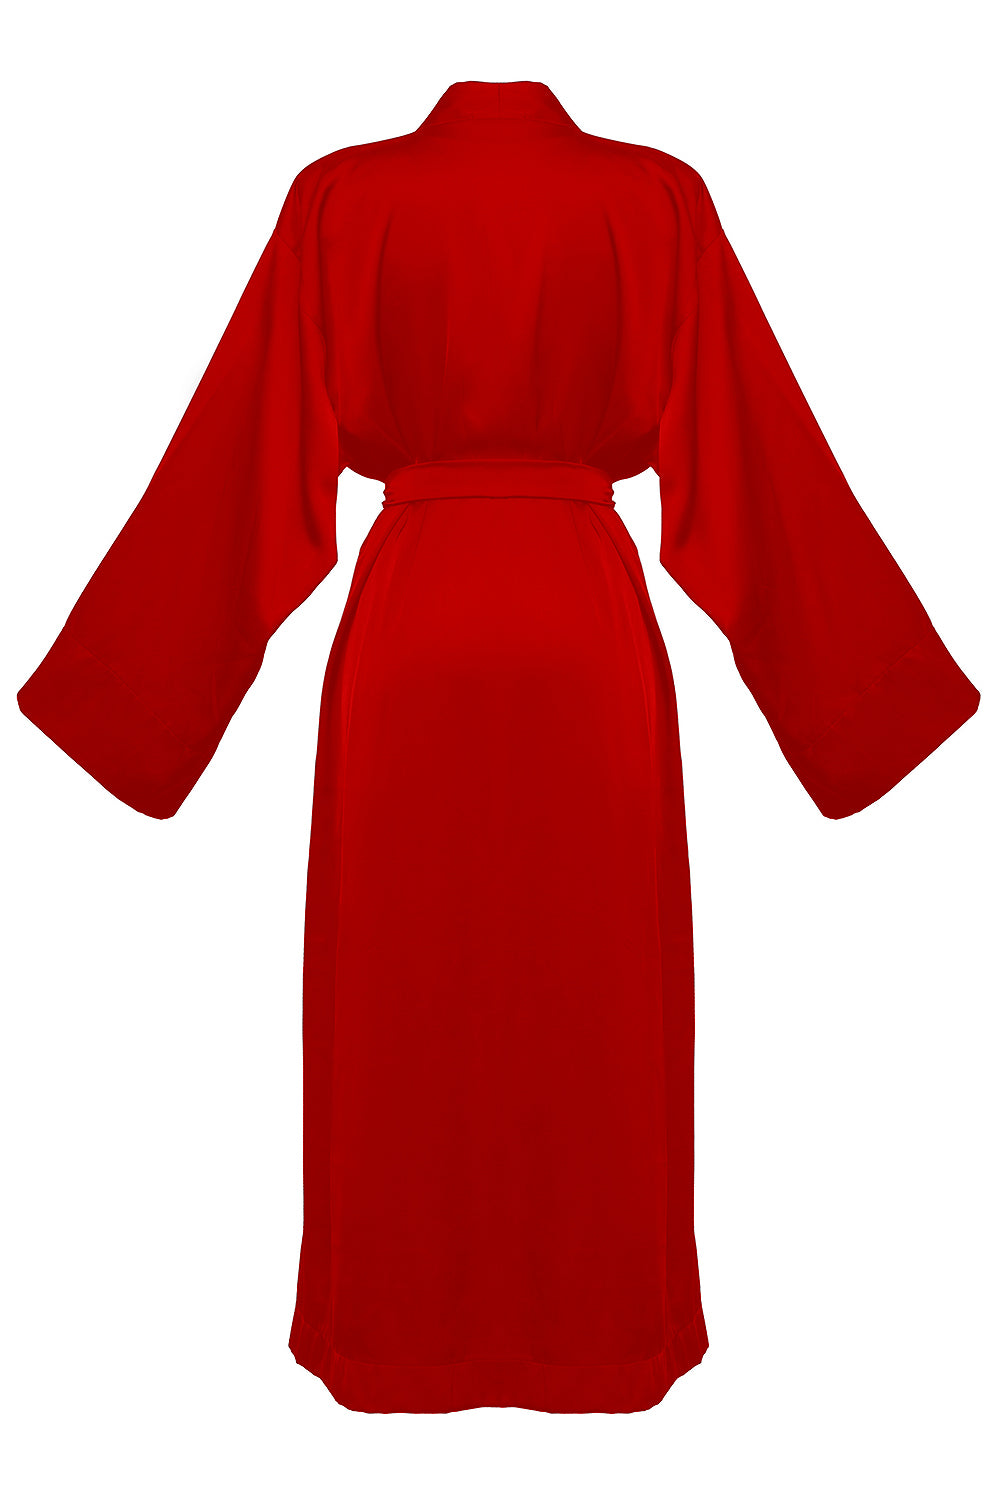 Kasumi red kimono robe